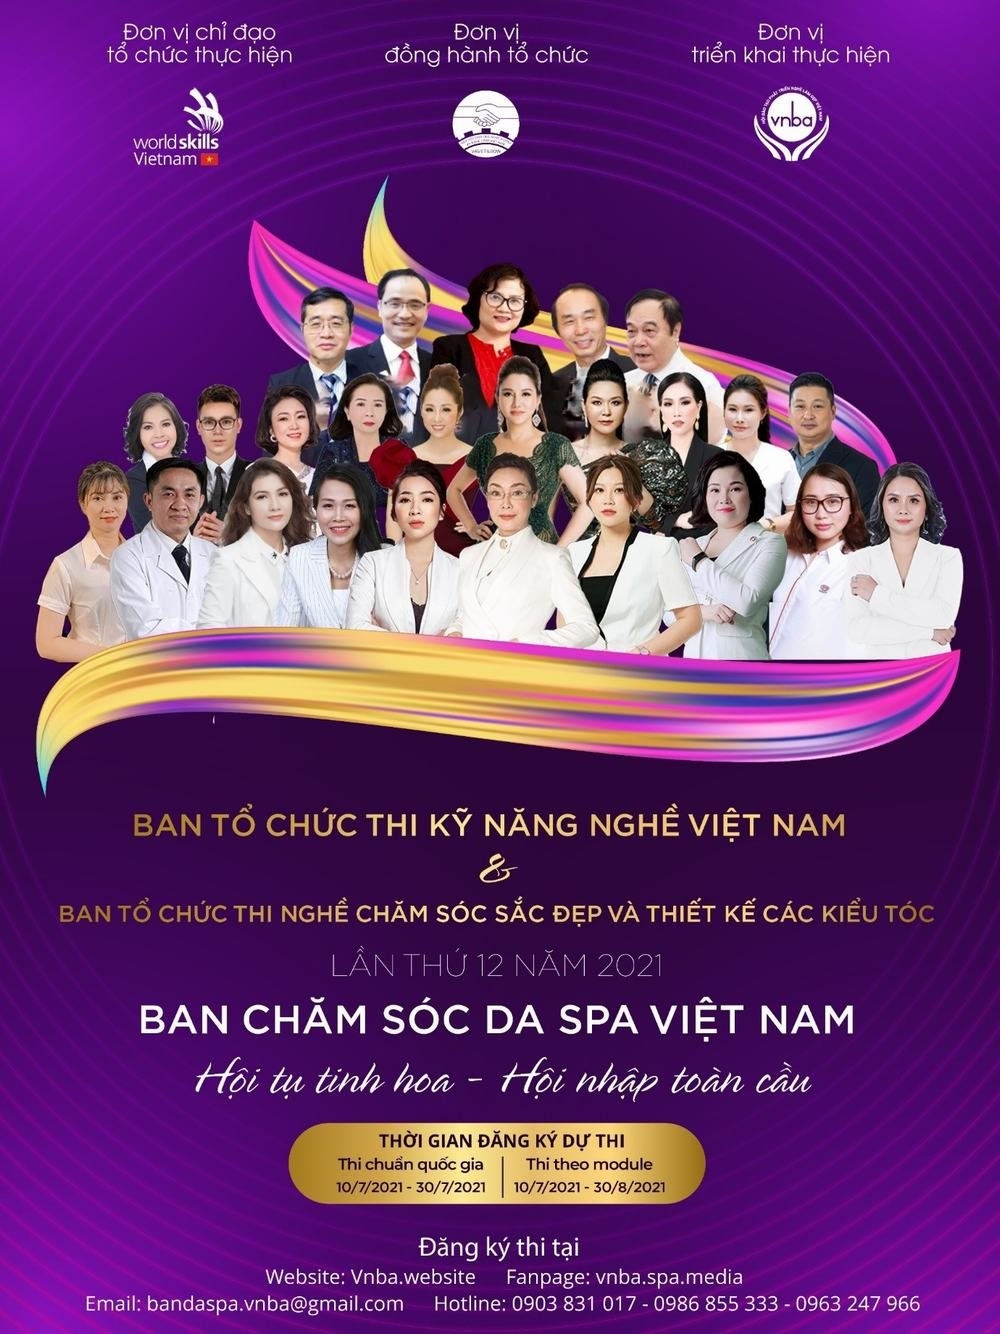 Ban chăm sóc da Spa Việt Nam Email: bandaspa.vnba@gmail.com; ĐT liên hệ: 0903831017